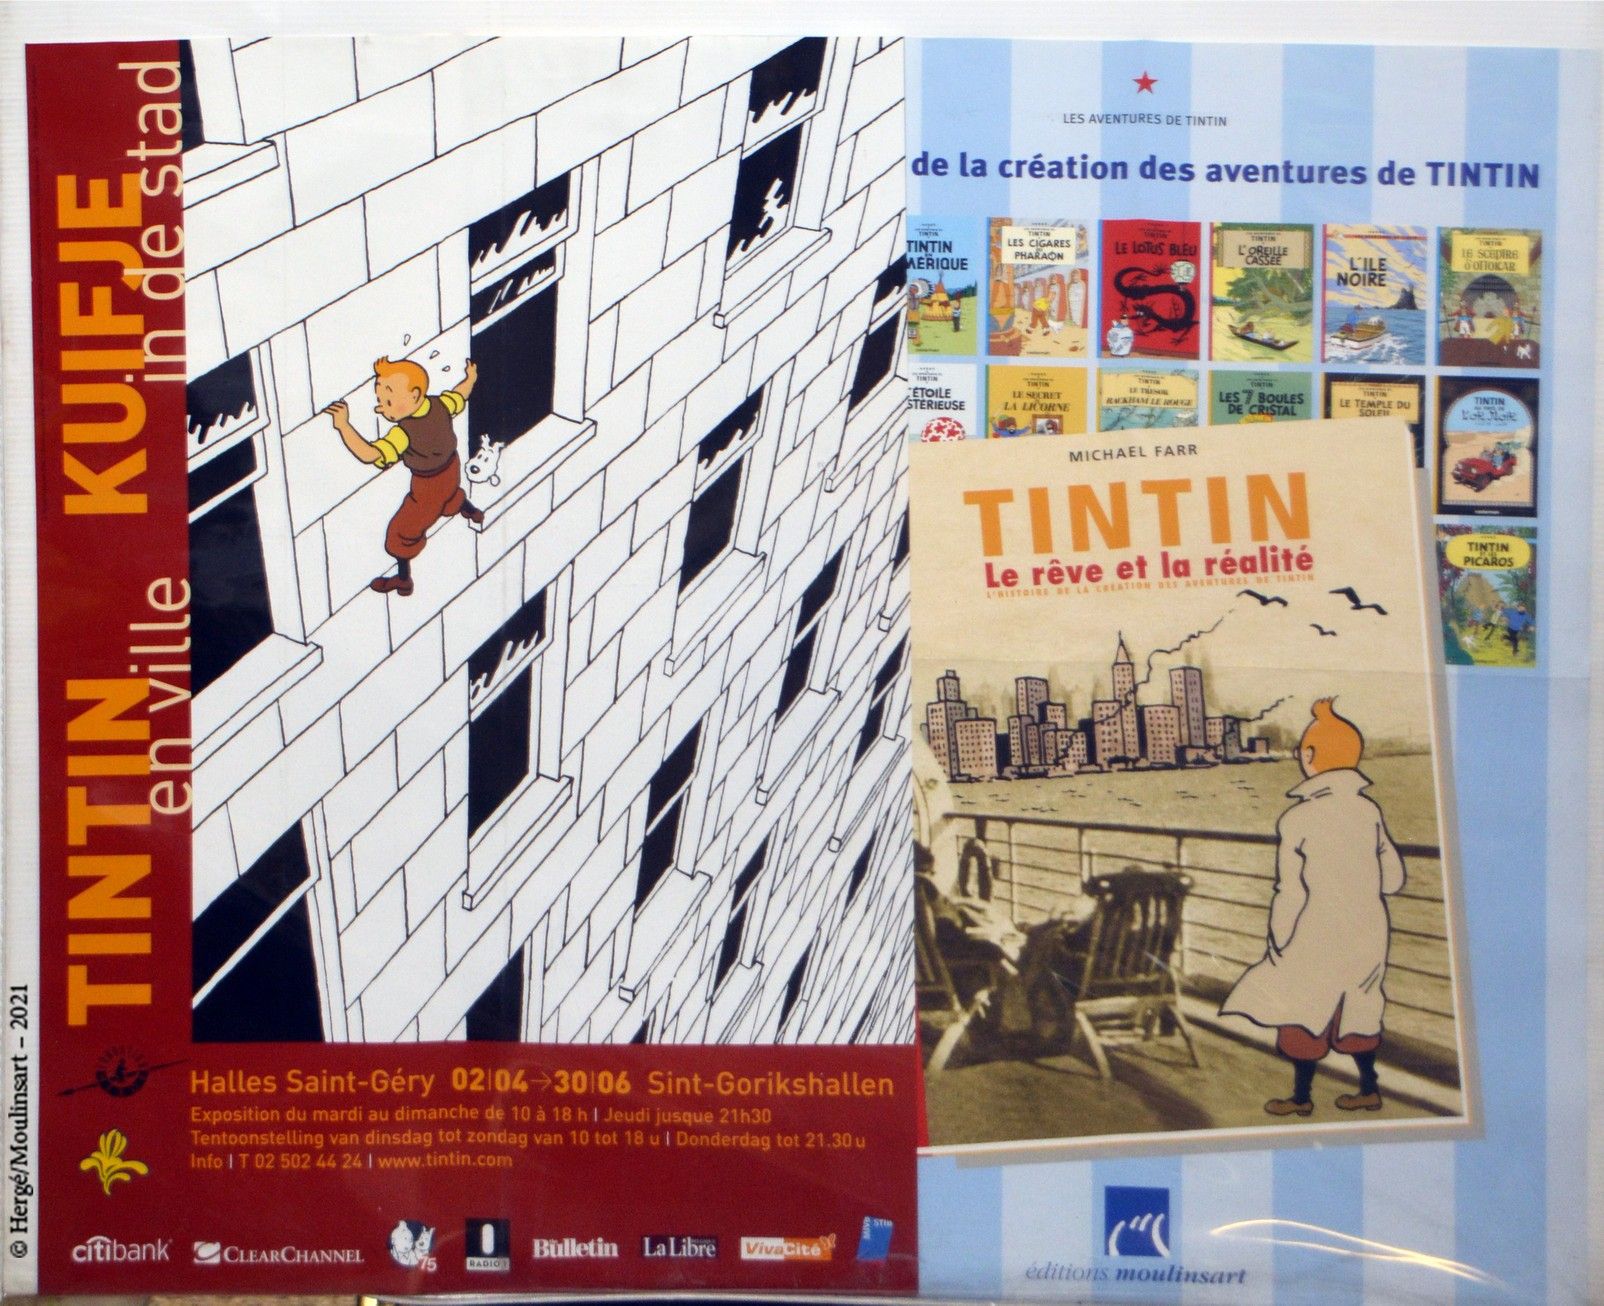 Dérivés HERGÉ/TINTIN

- Affiche "Tintin en ville", 60 x 40 cm

- Affiche "Tintin&hellip;